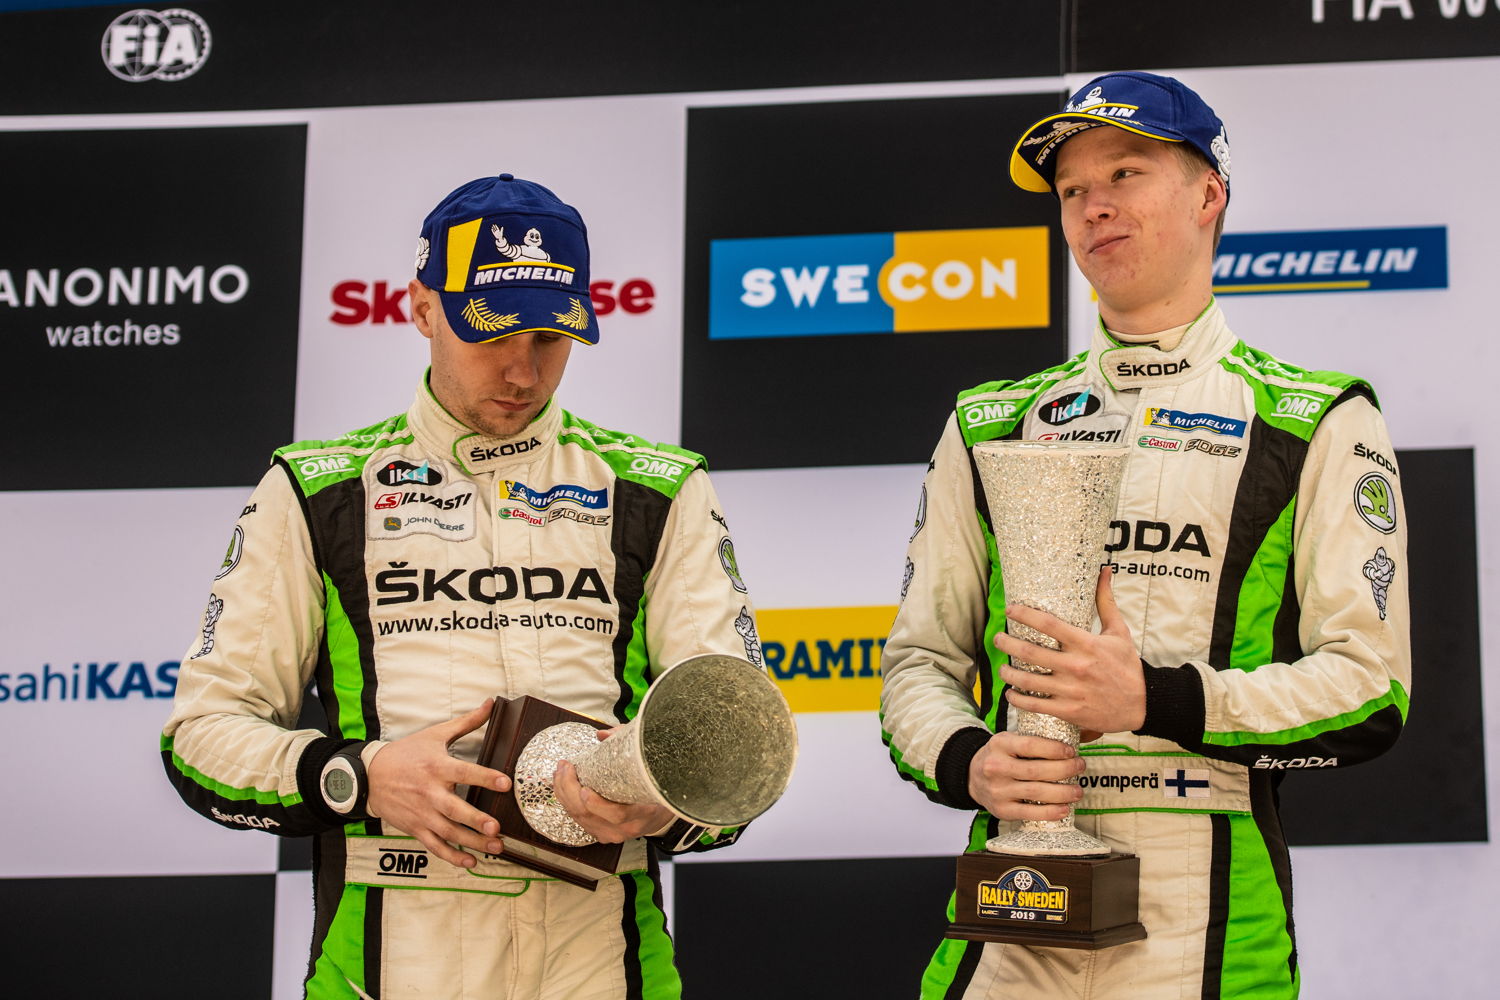 Kalle Rovanperä/Jonne Halttunen (ŠKODA FABIA R5)
are currently second overall in the WRC 2 Pro category
standings